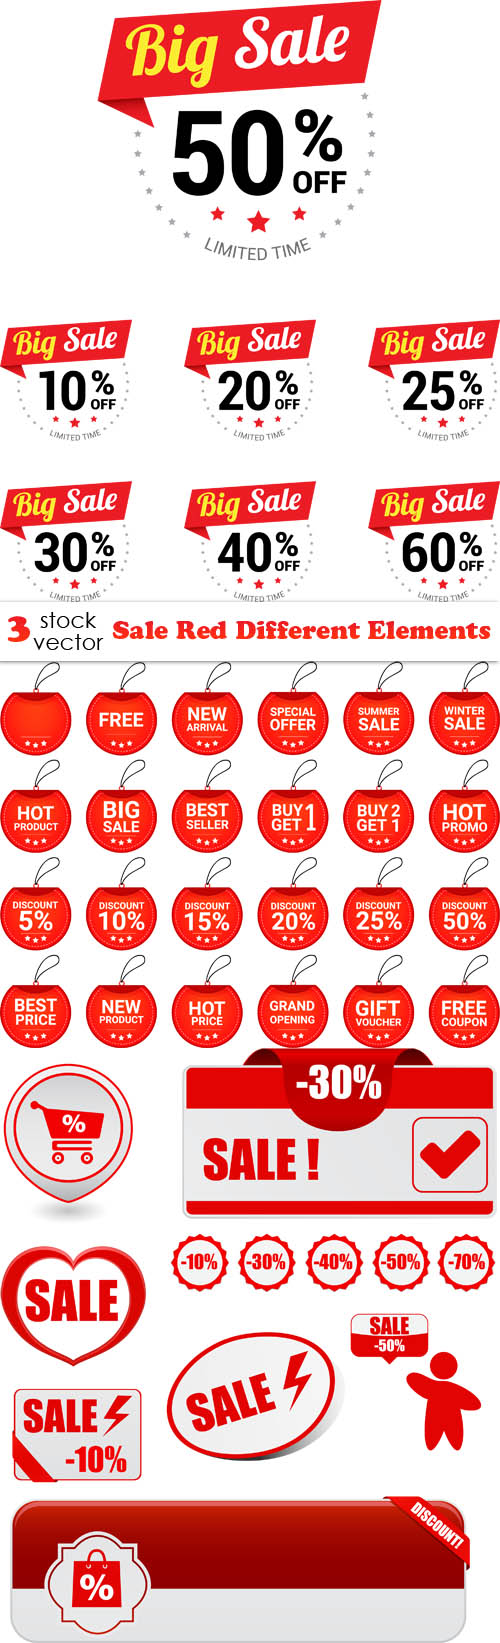 Vectors - Sale Red Different Elements 2